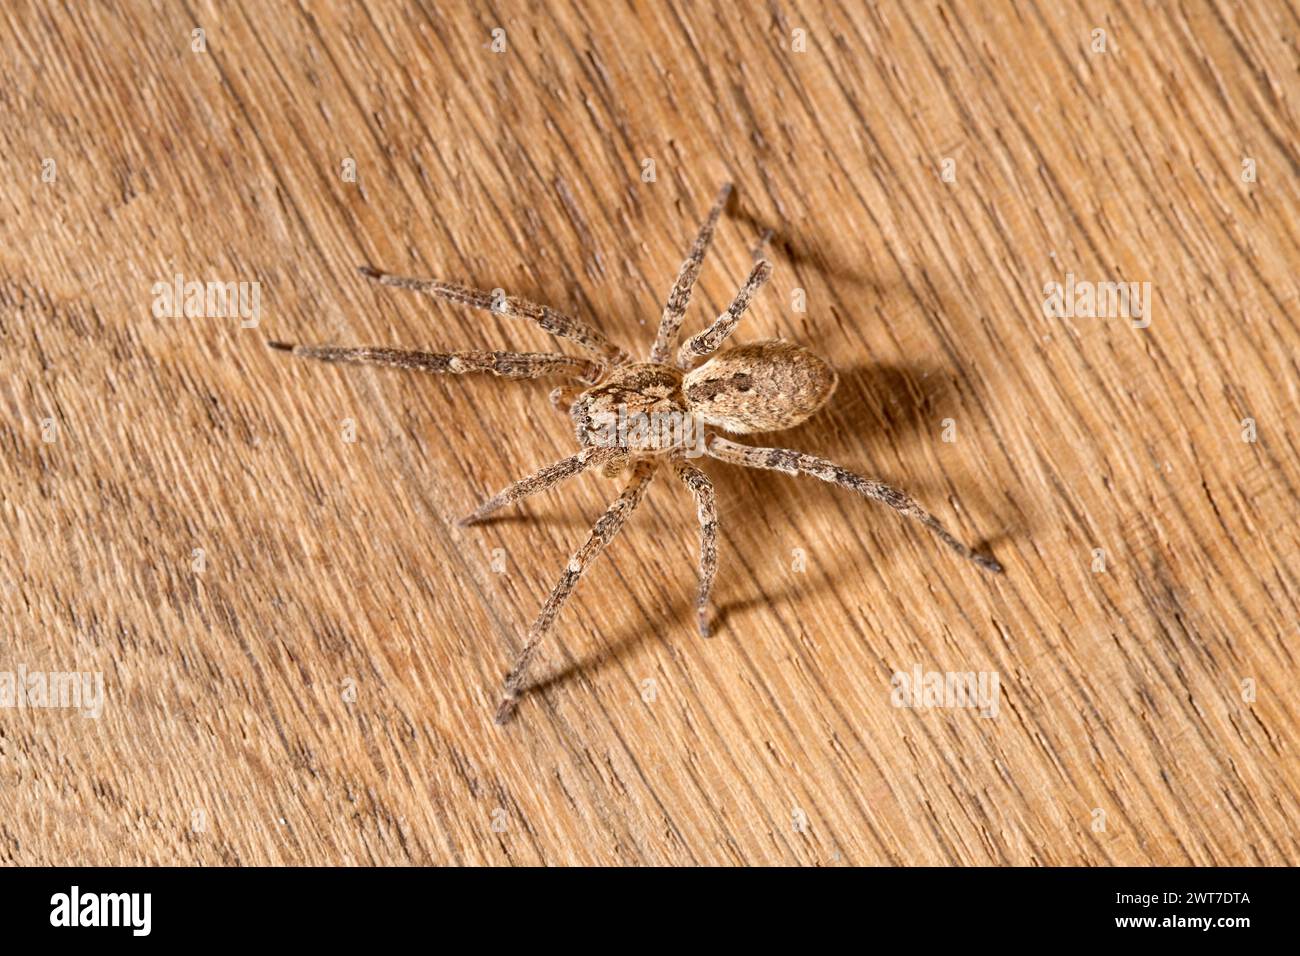 Araignée Nosferatu brune sur une vue intérieure souterraine brune en bois Banque D'Images